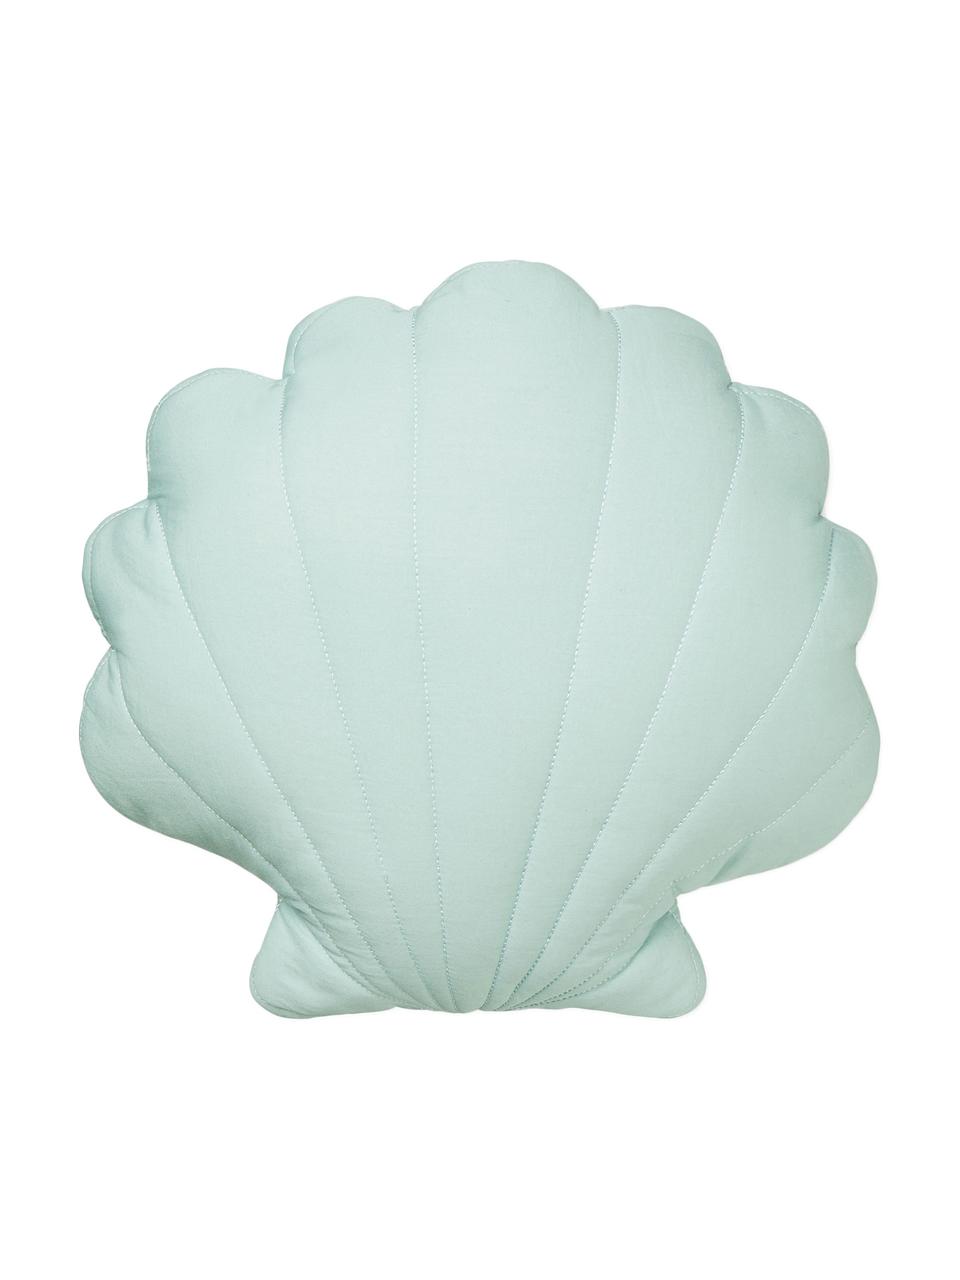 Poduszka z bawełny organicznej z wypełnieniem Sea Shell, Tapicerka: bawełna organiczna, certy, Zielony miętowy, S 28 x D 39 cm